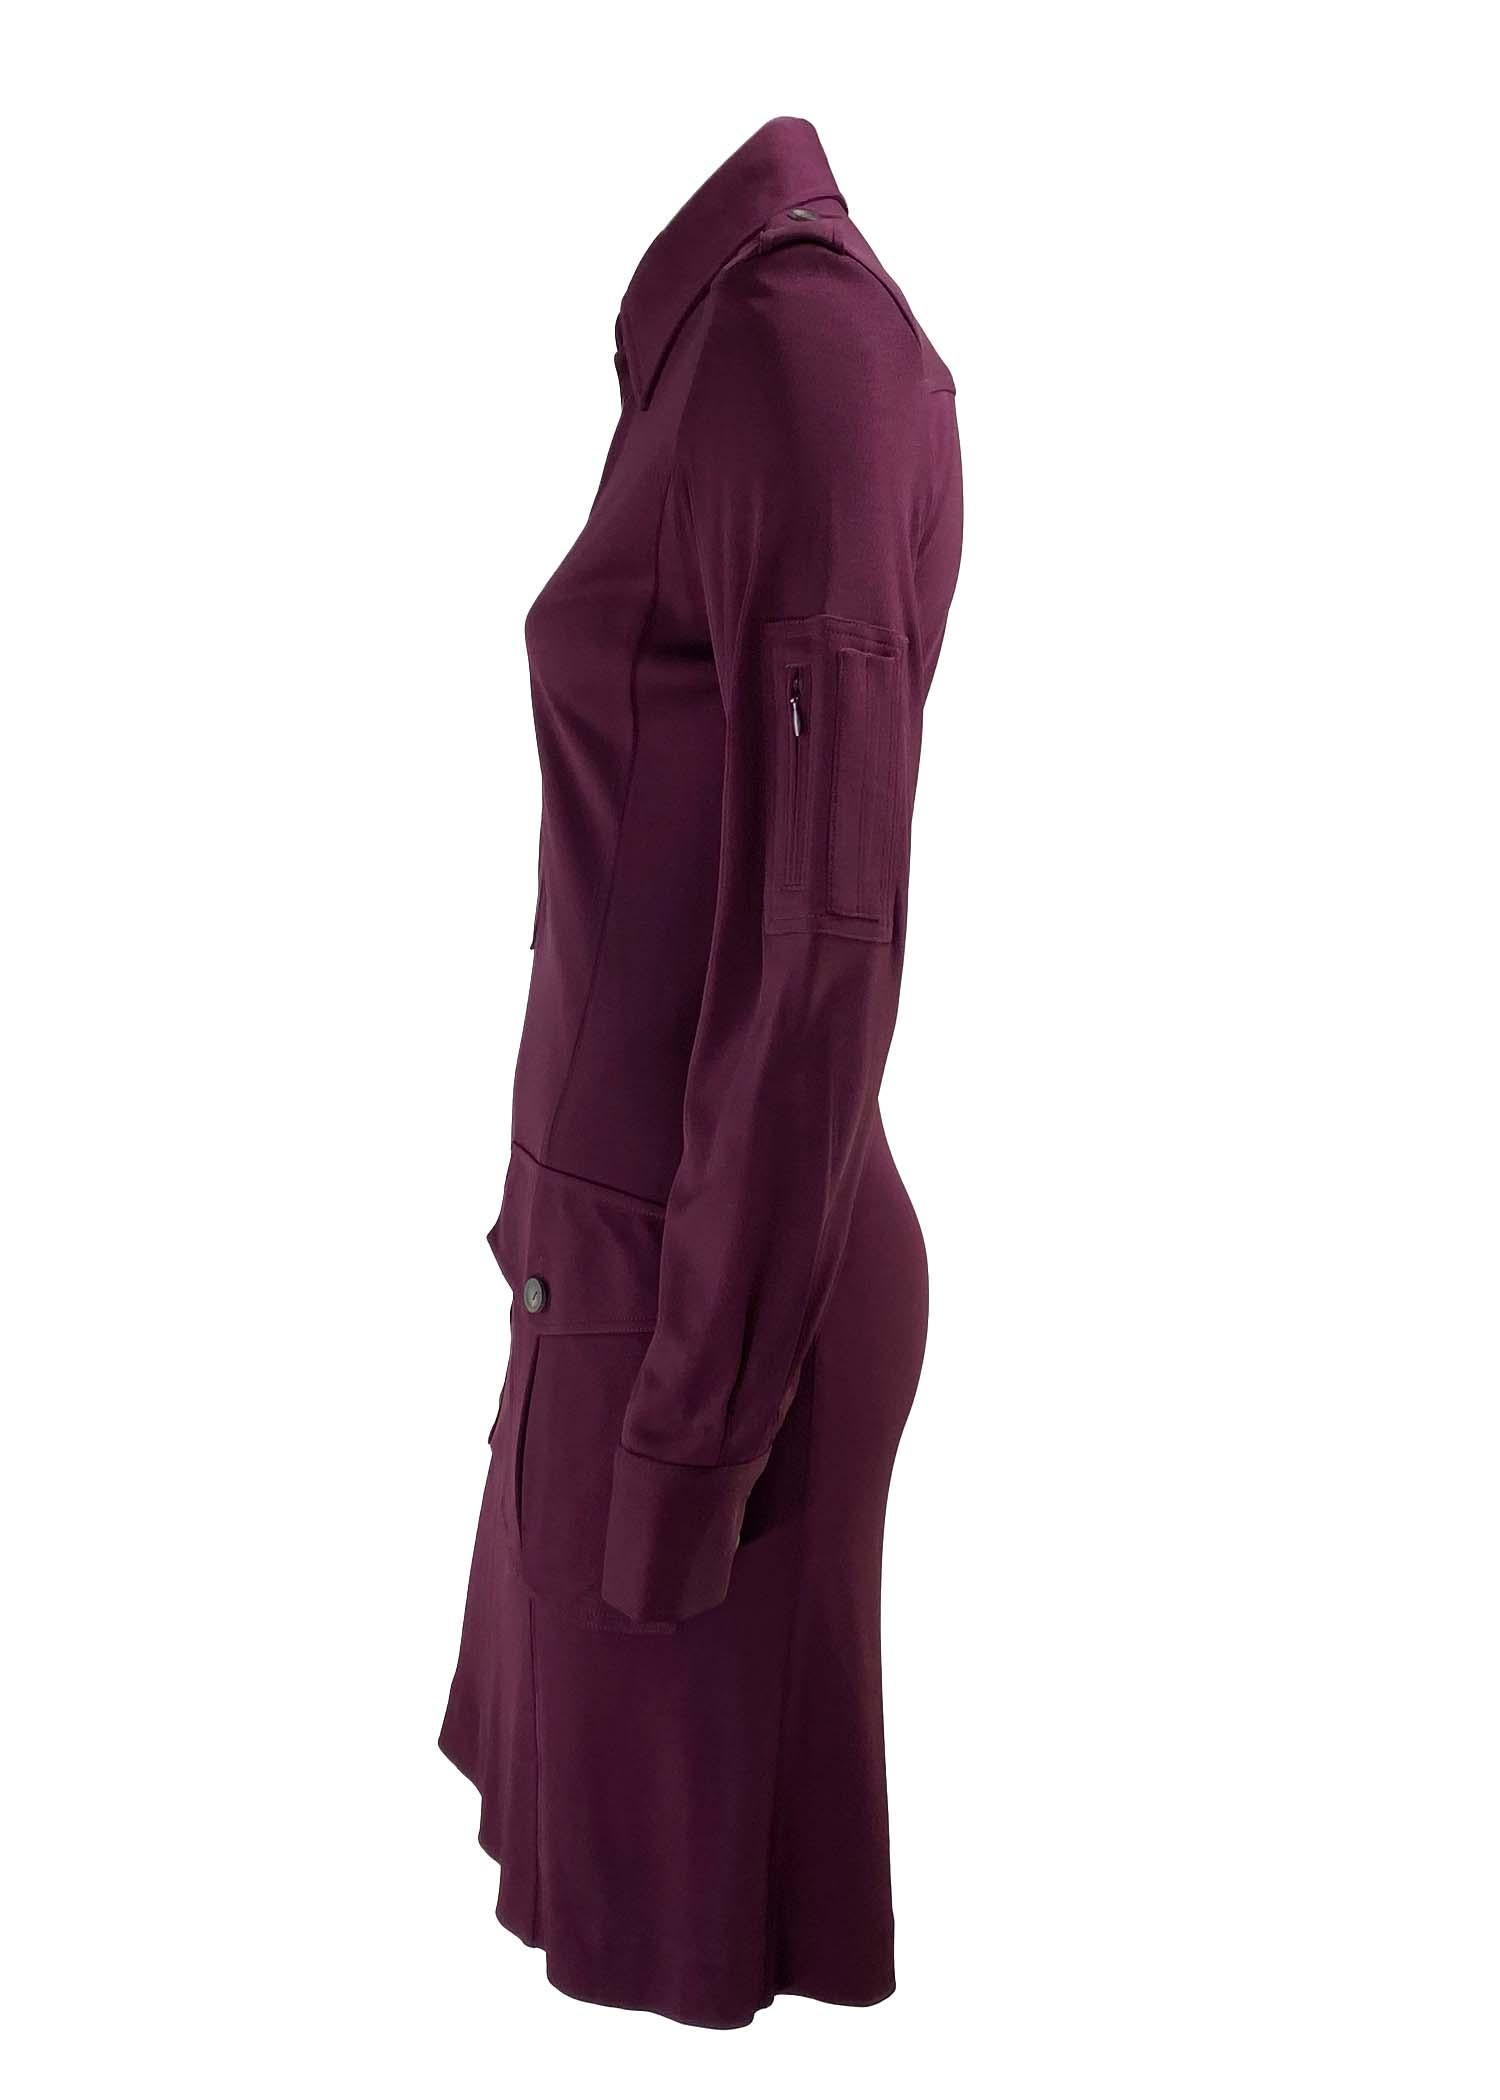 Présentation d'une robe Gucci à col d'inspiration militaire, conçue par Tom Ford. Cette robe de la collection Automne/Hiver 1996 est confectionnée dans une viscose épaisse et extensible qui permet au tissu de tomber parfaitement sur les courbes du